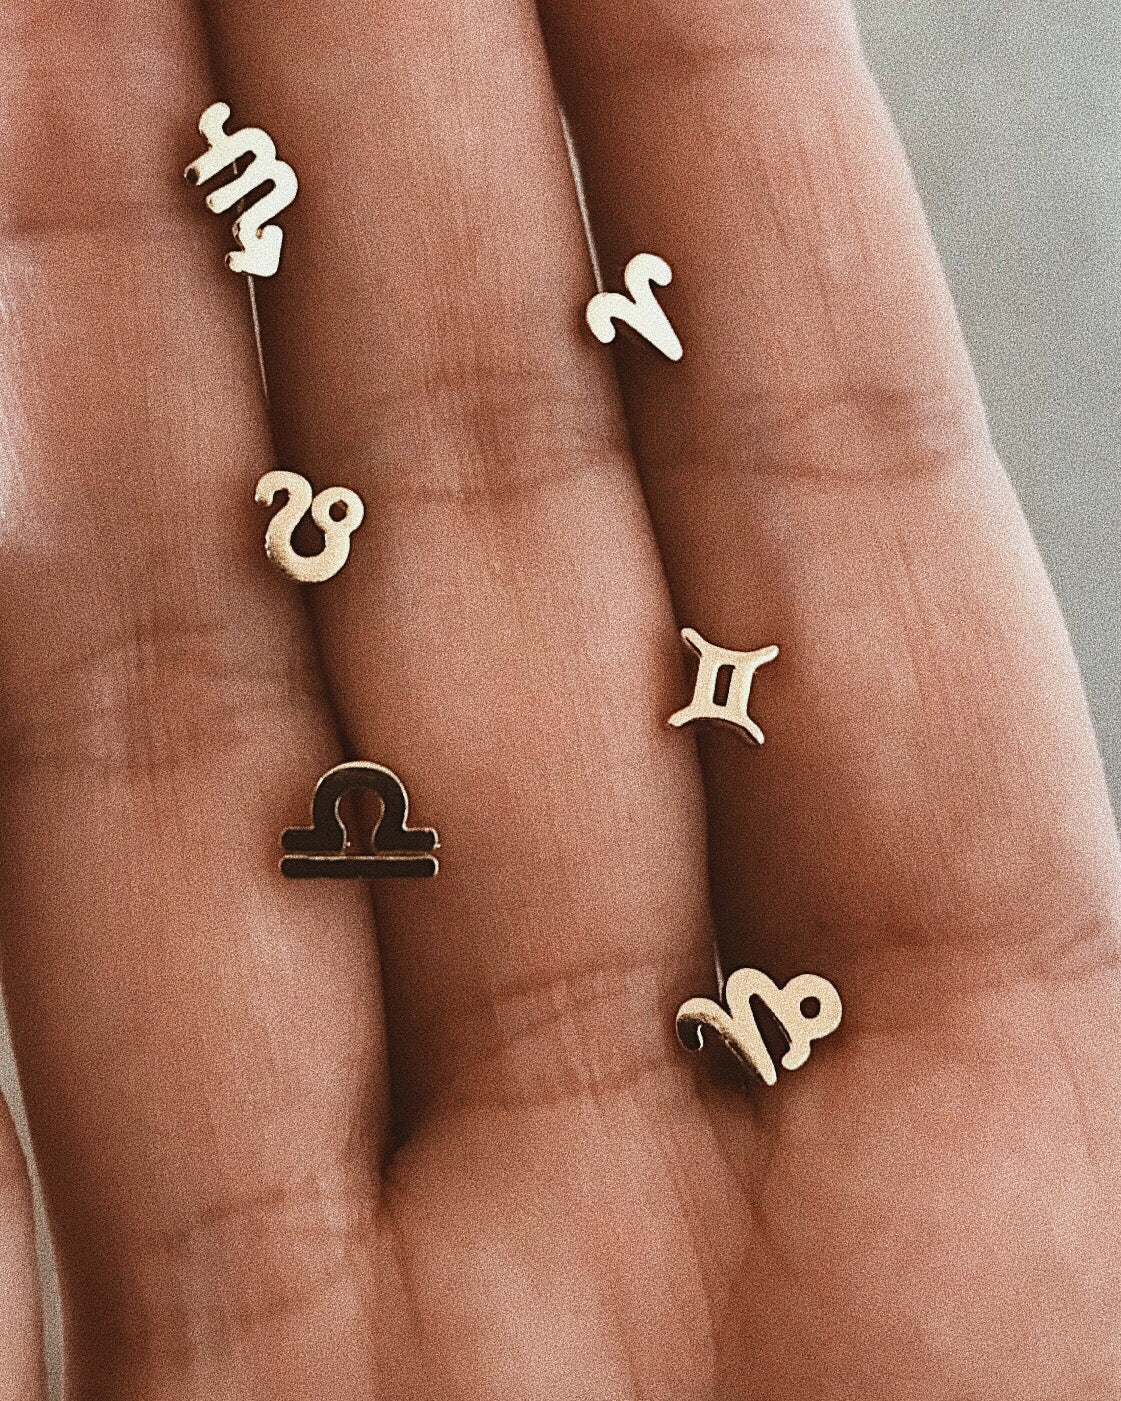 ✨14k Tiny Zodiac Studs - Bing Bang Jewelry NYC